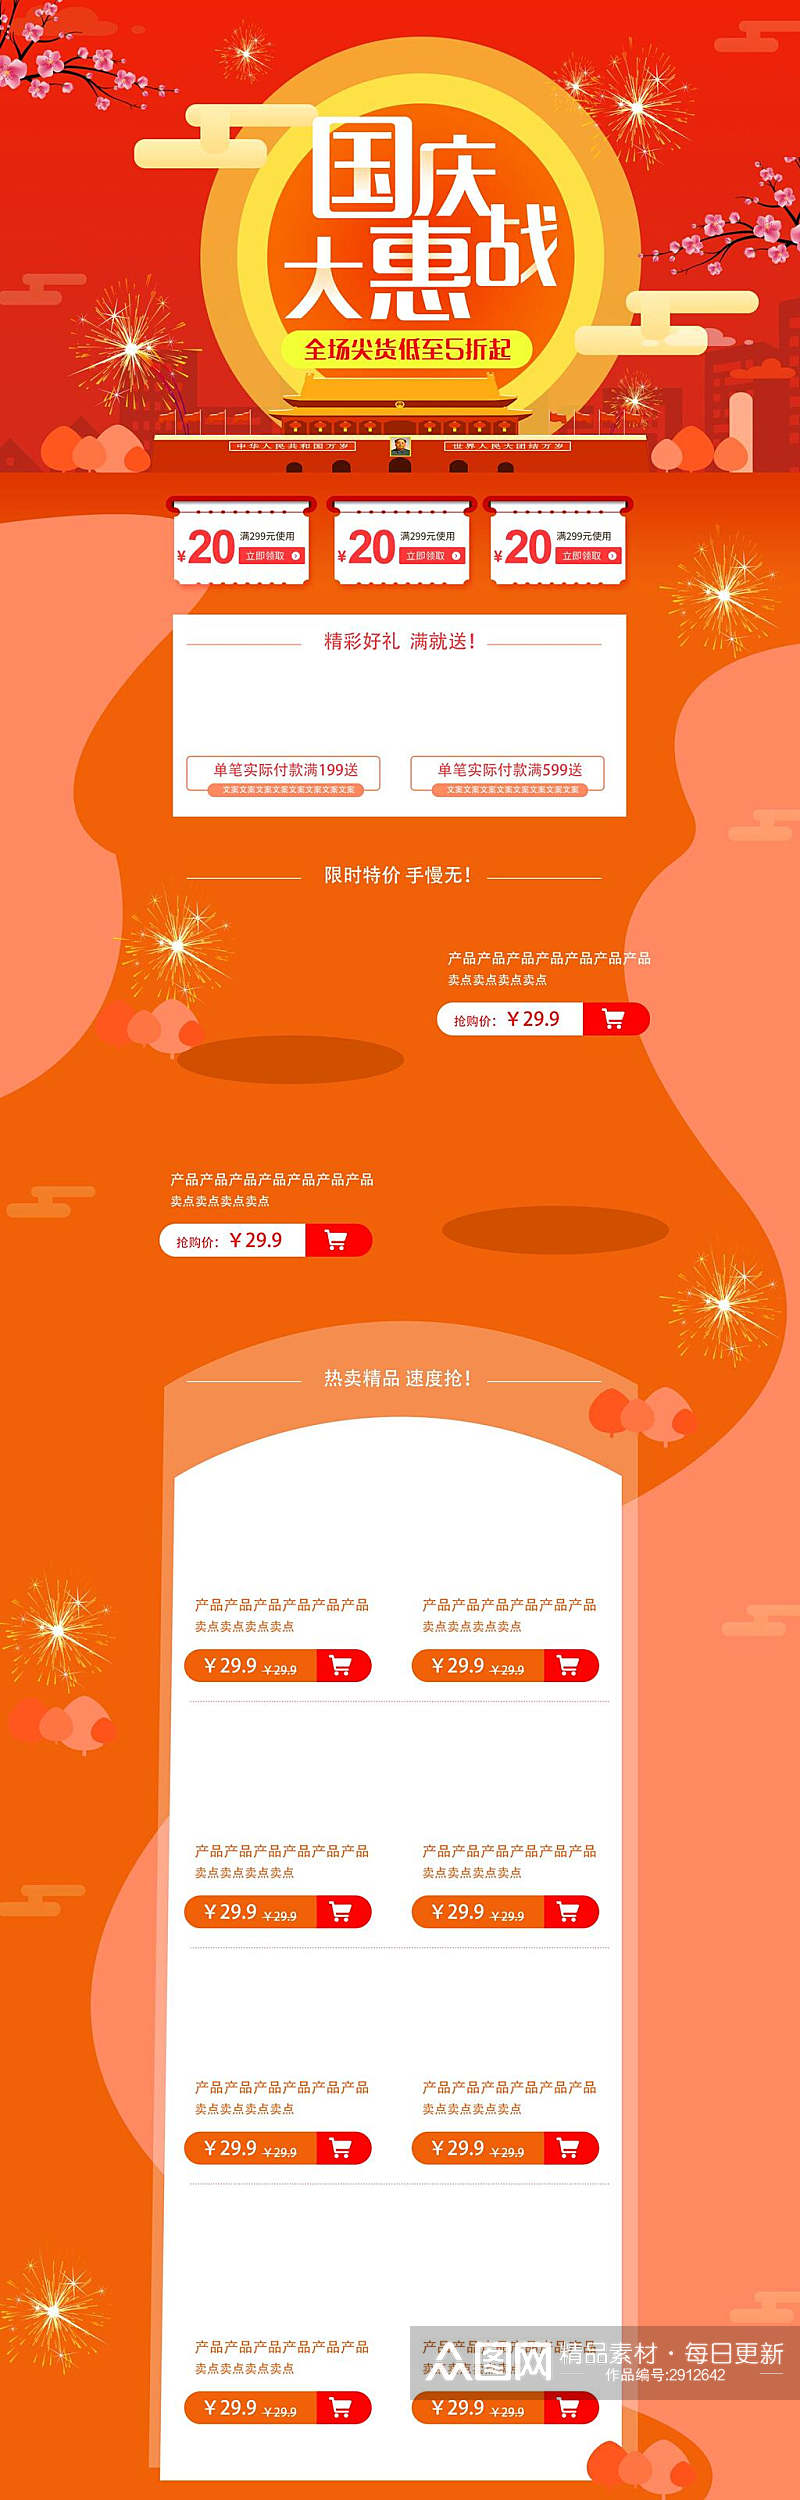 橙色国庆节大惠战电商首页素材